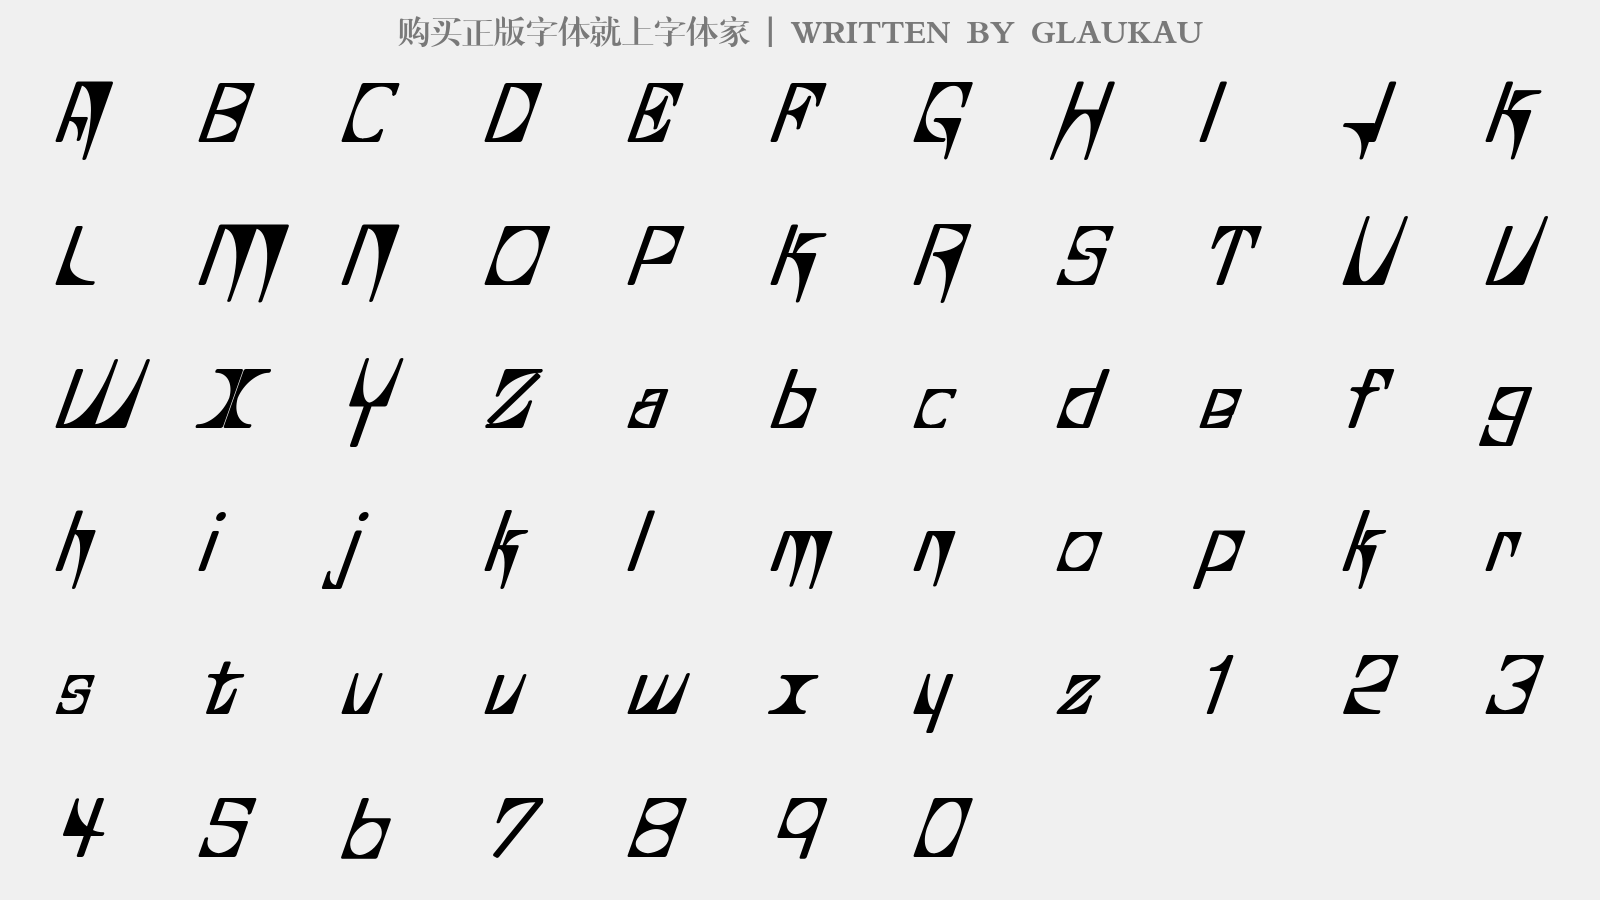 GLAUKAU - 大写字母/小写字母/数字